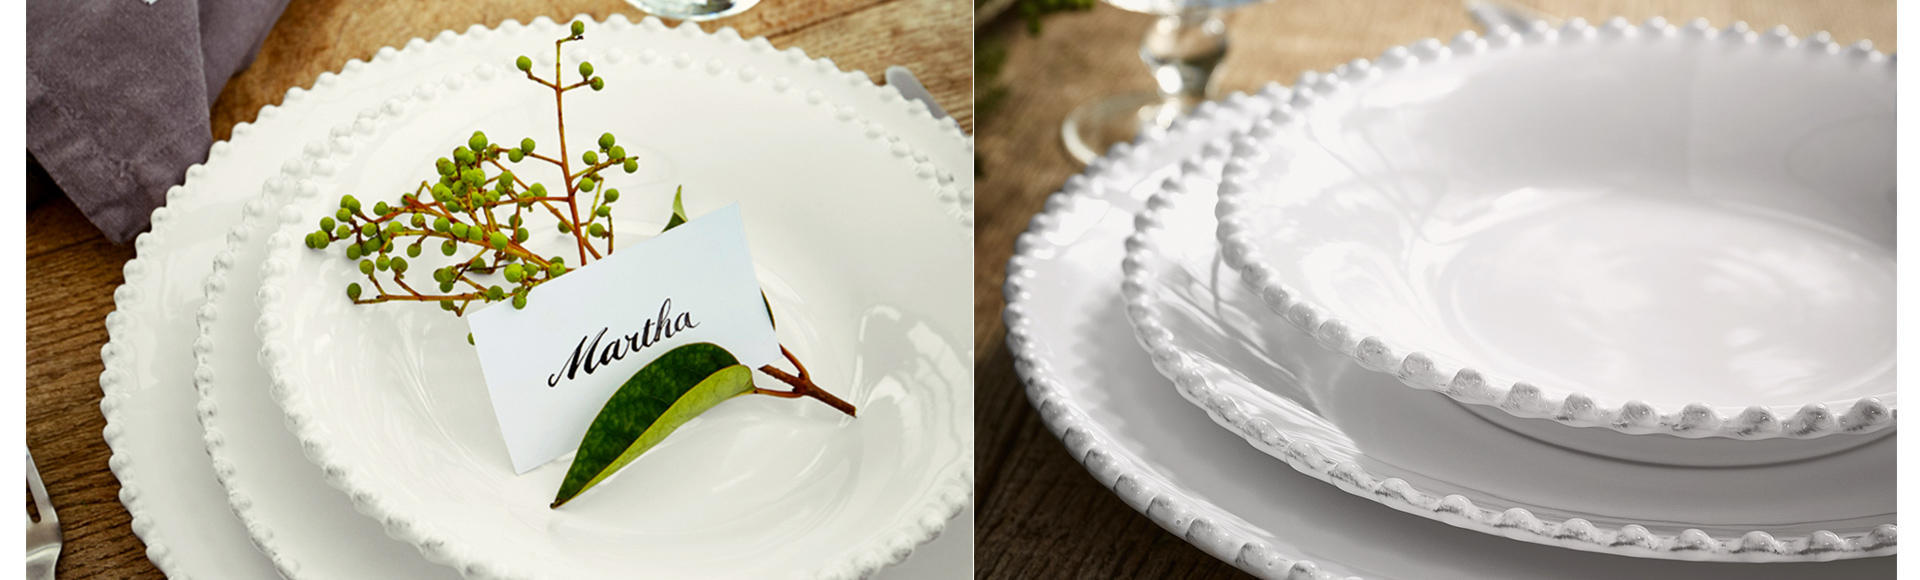 18・19世紀のヨーロッパの豊かな陶器のデザインにインスパイアされたパールホワイトシリーズ。パールのような粒がお皿のエッジを飾ります。